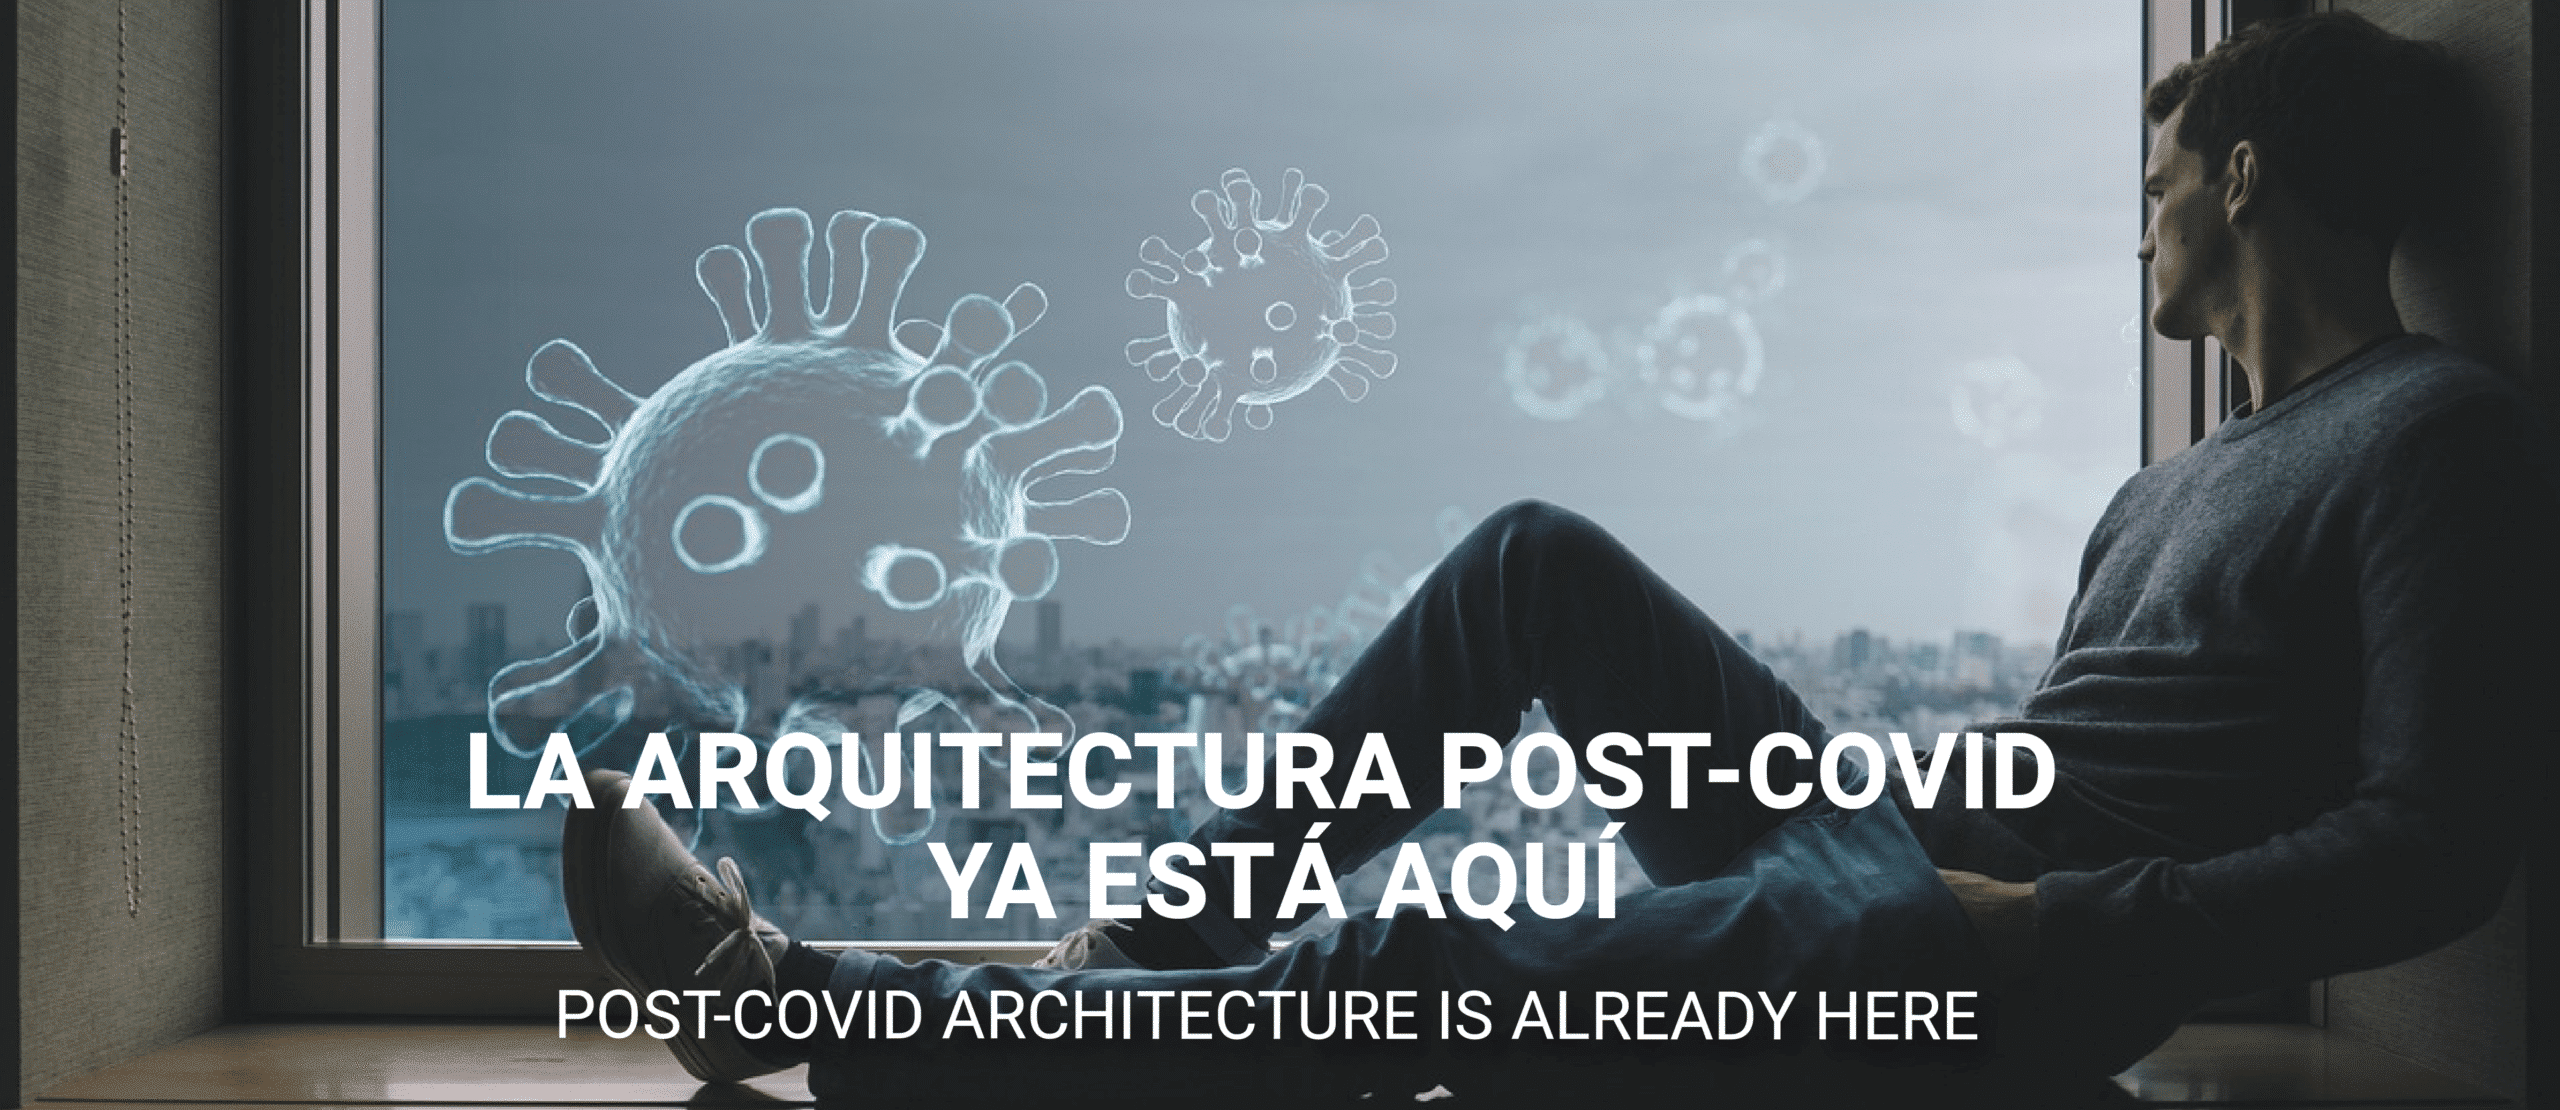  Post-COVID architecture